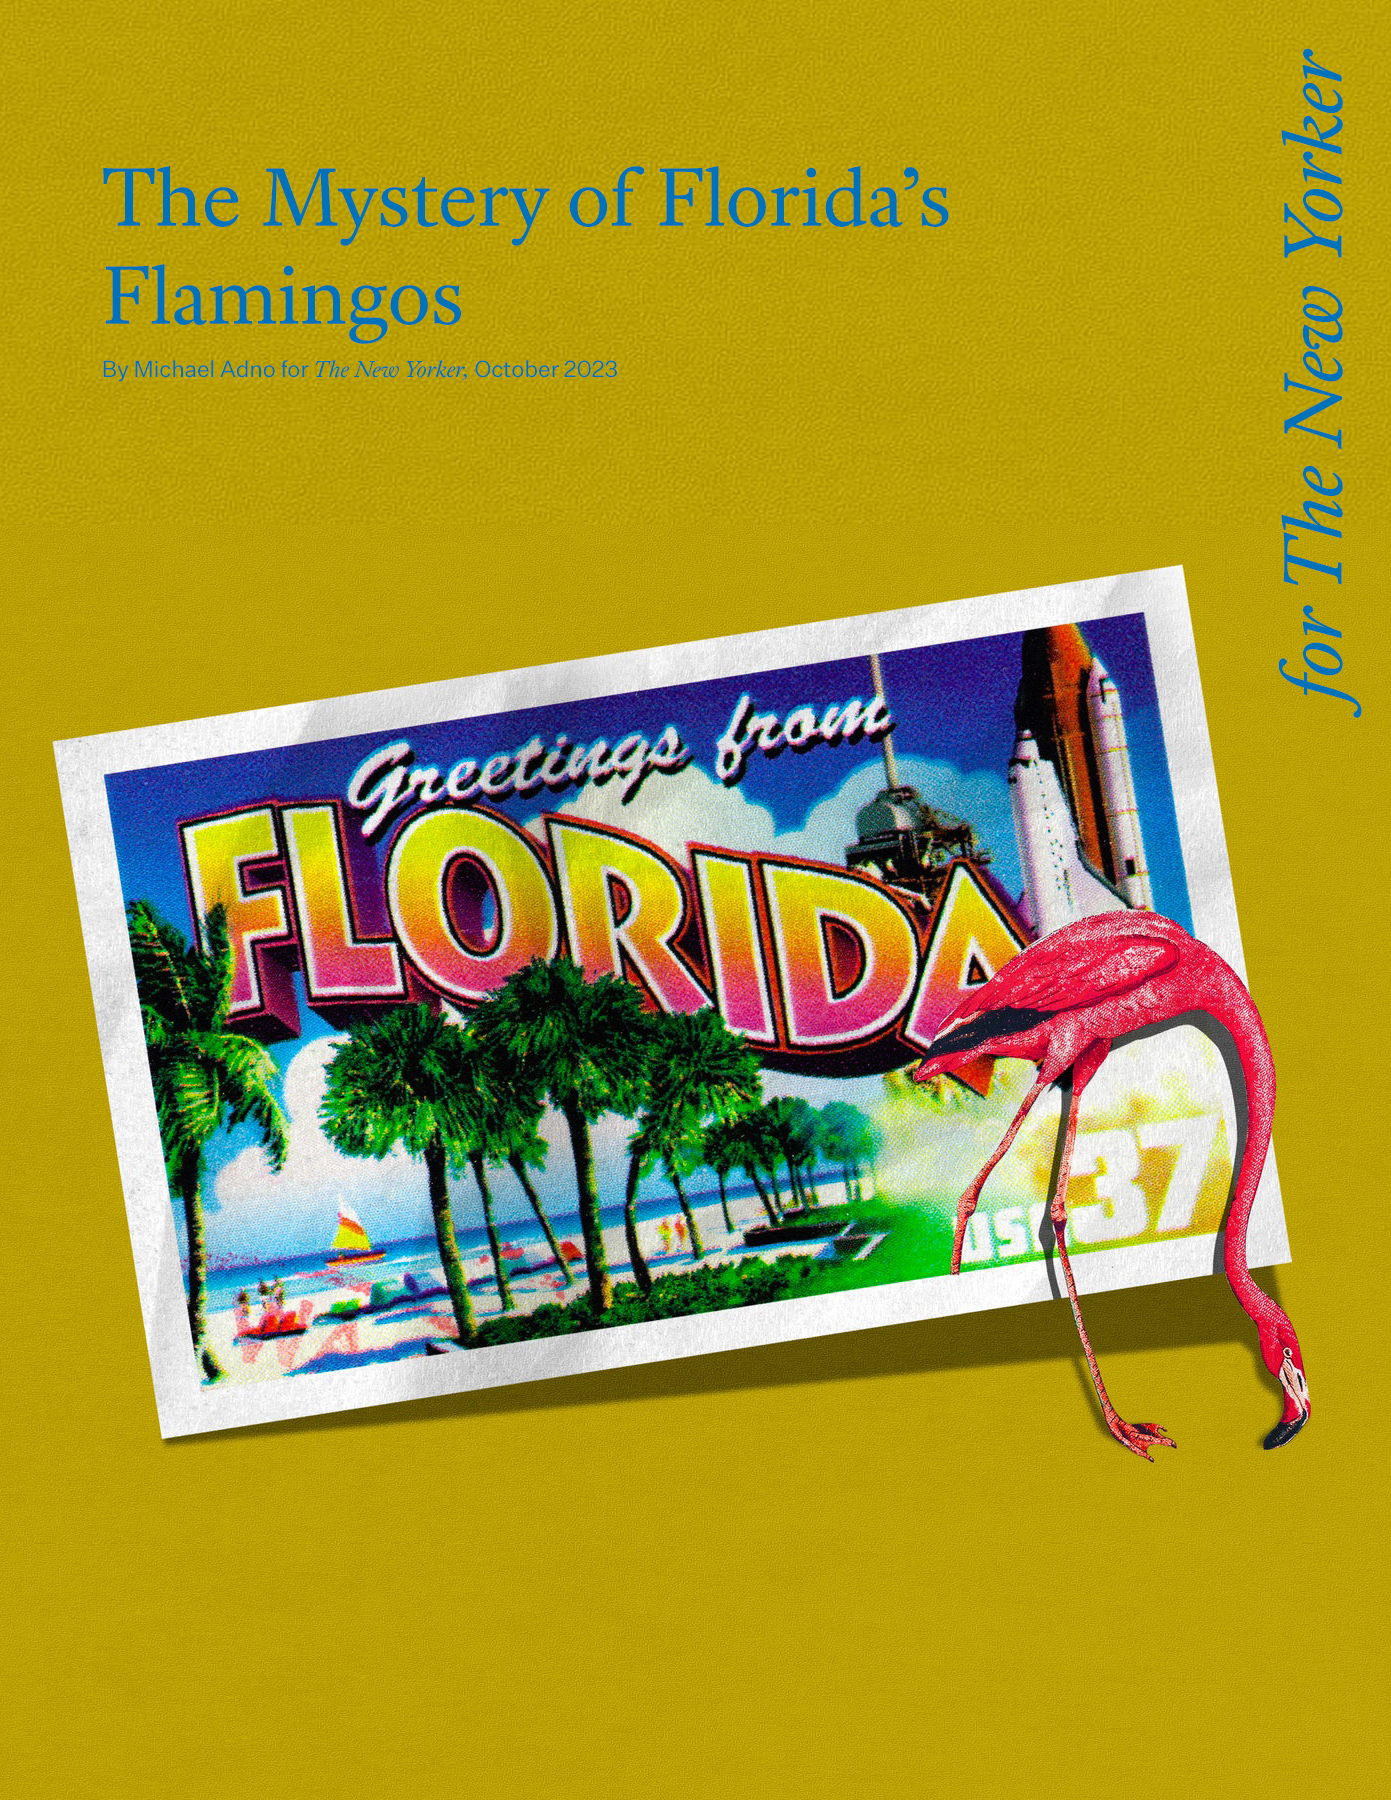 Flamingo-Card-for-Site